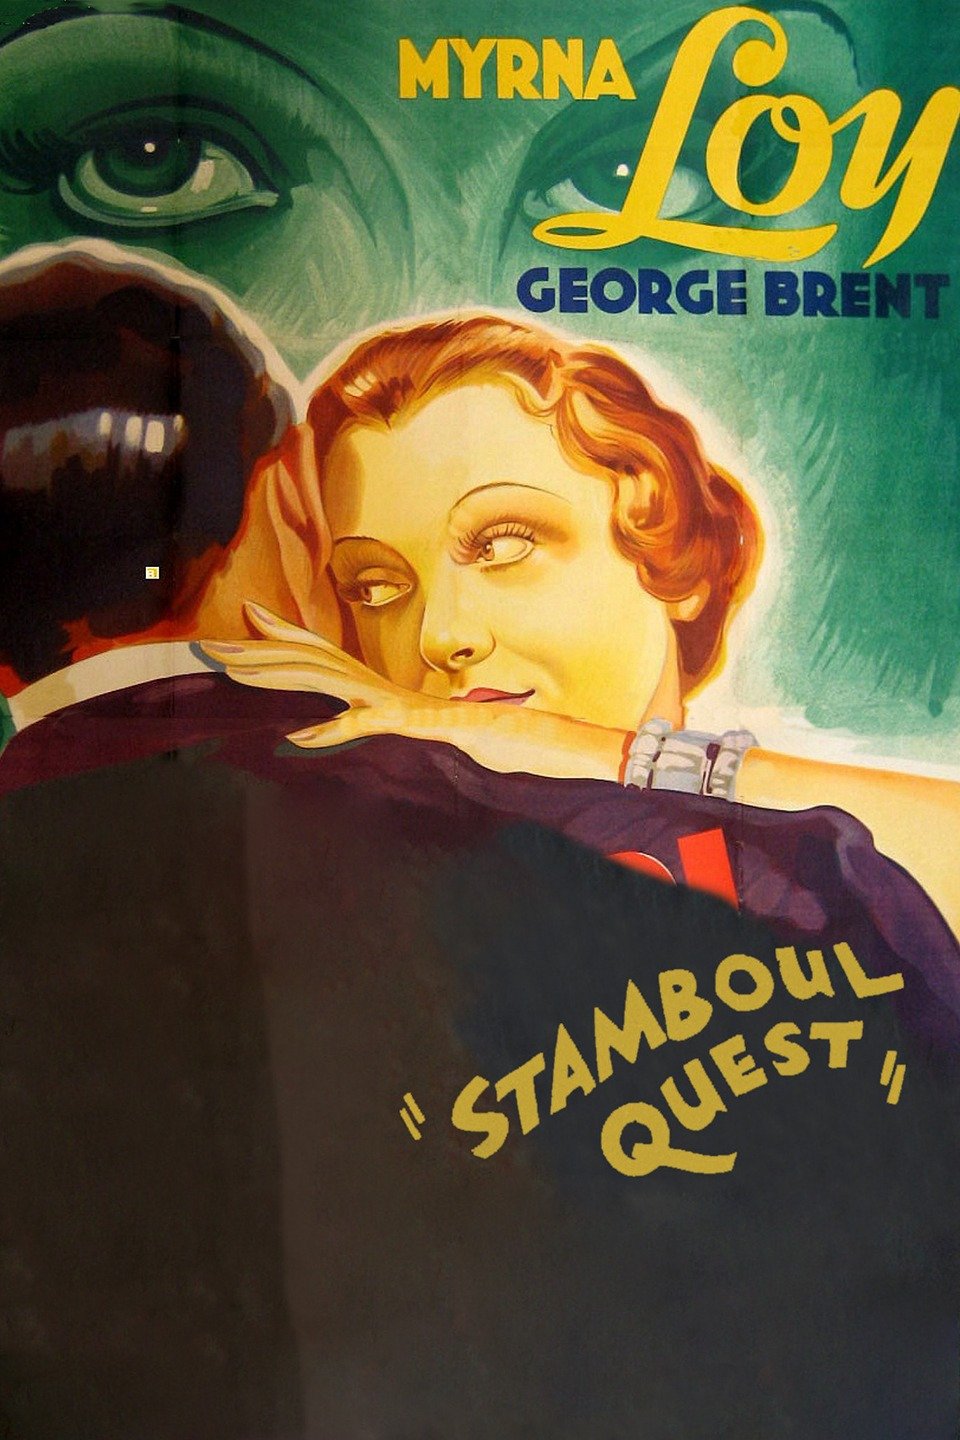 Stamboul Quest (1934) Screenshot 5